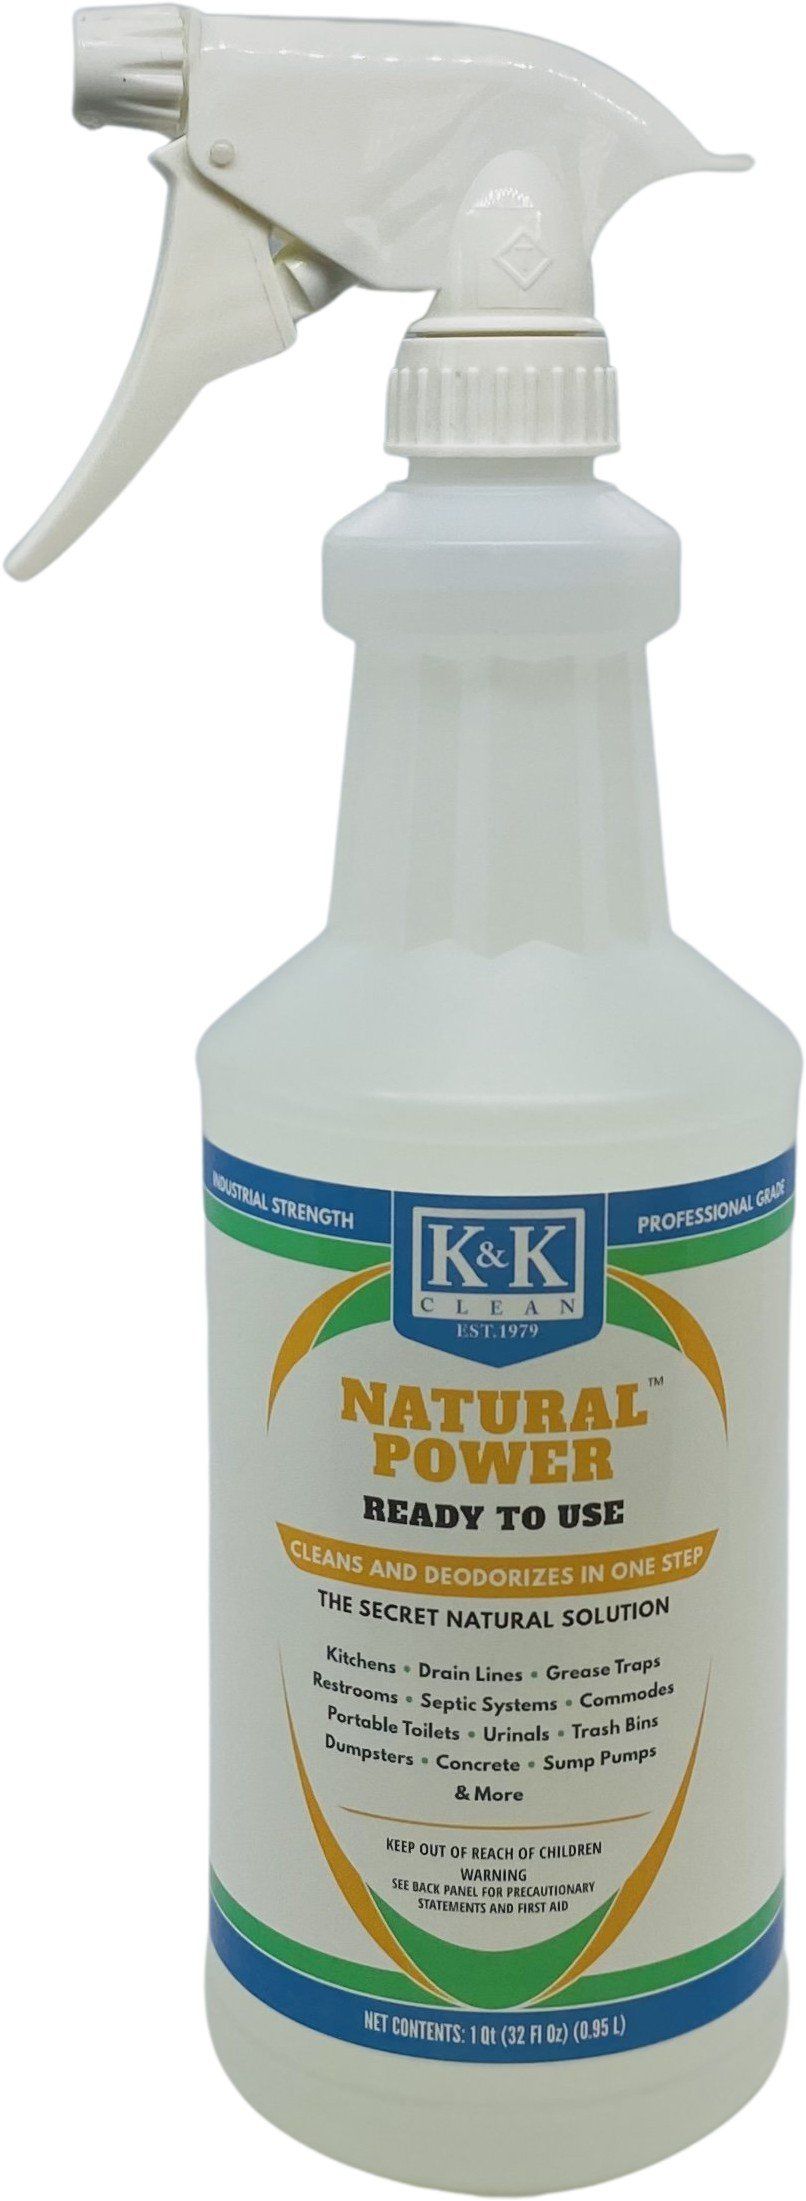 NATURAL POWER | RTU - Eco-Safe Natural Cleaner and Odor Remover - Bundle Deal